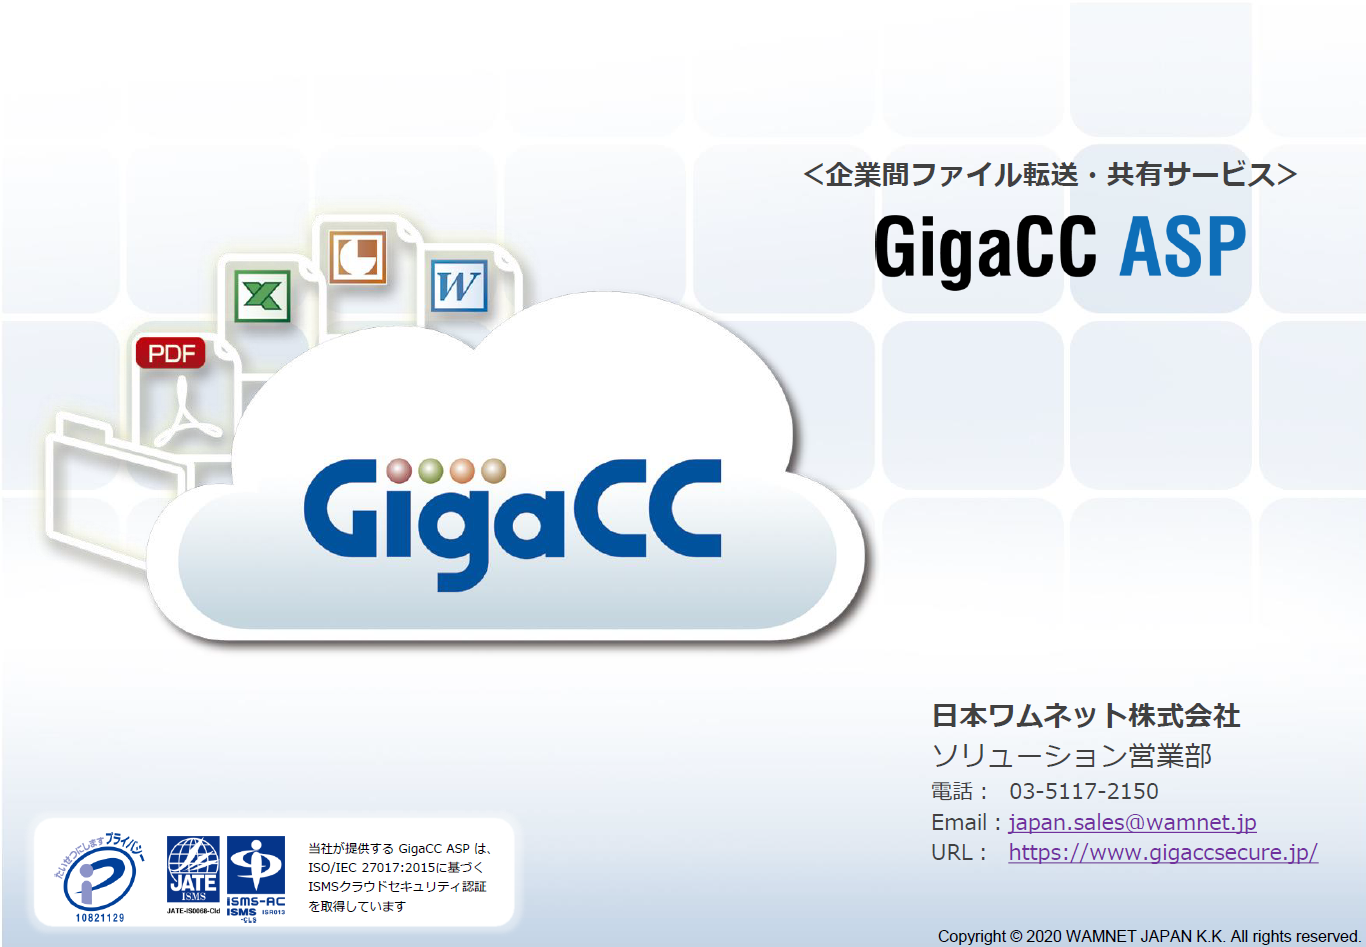 Gigacc Asp インタビュー掲載 オンラインストレージ ファイル共有サービス アスピック